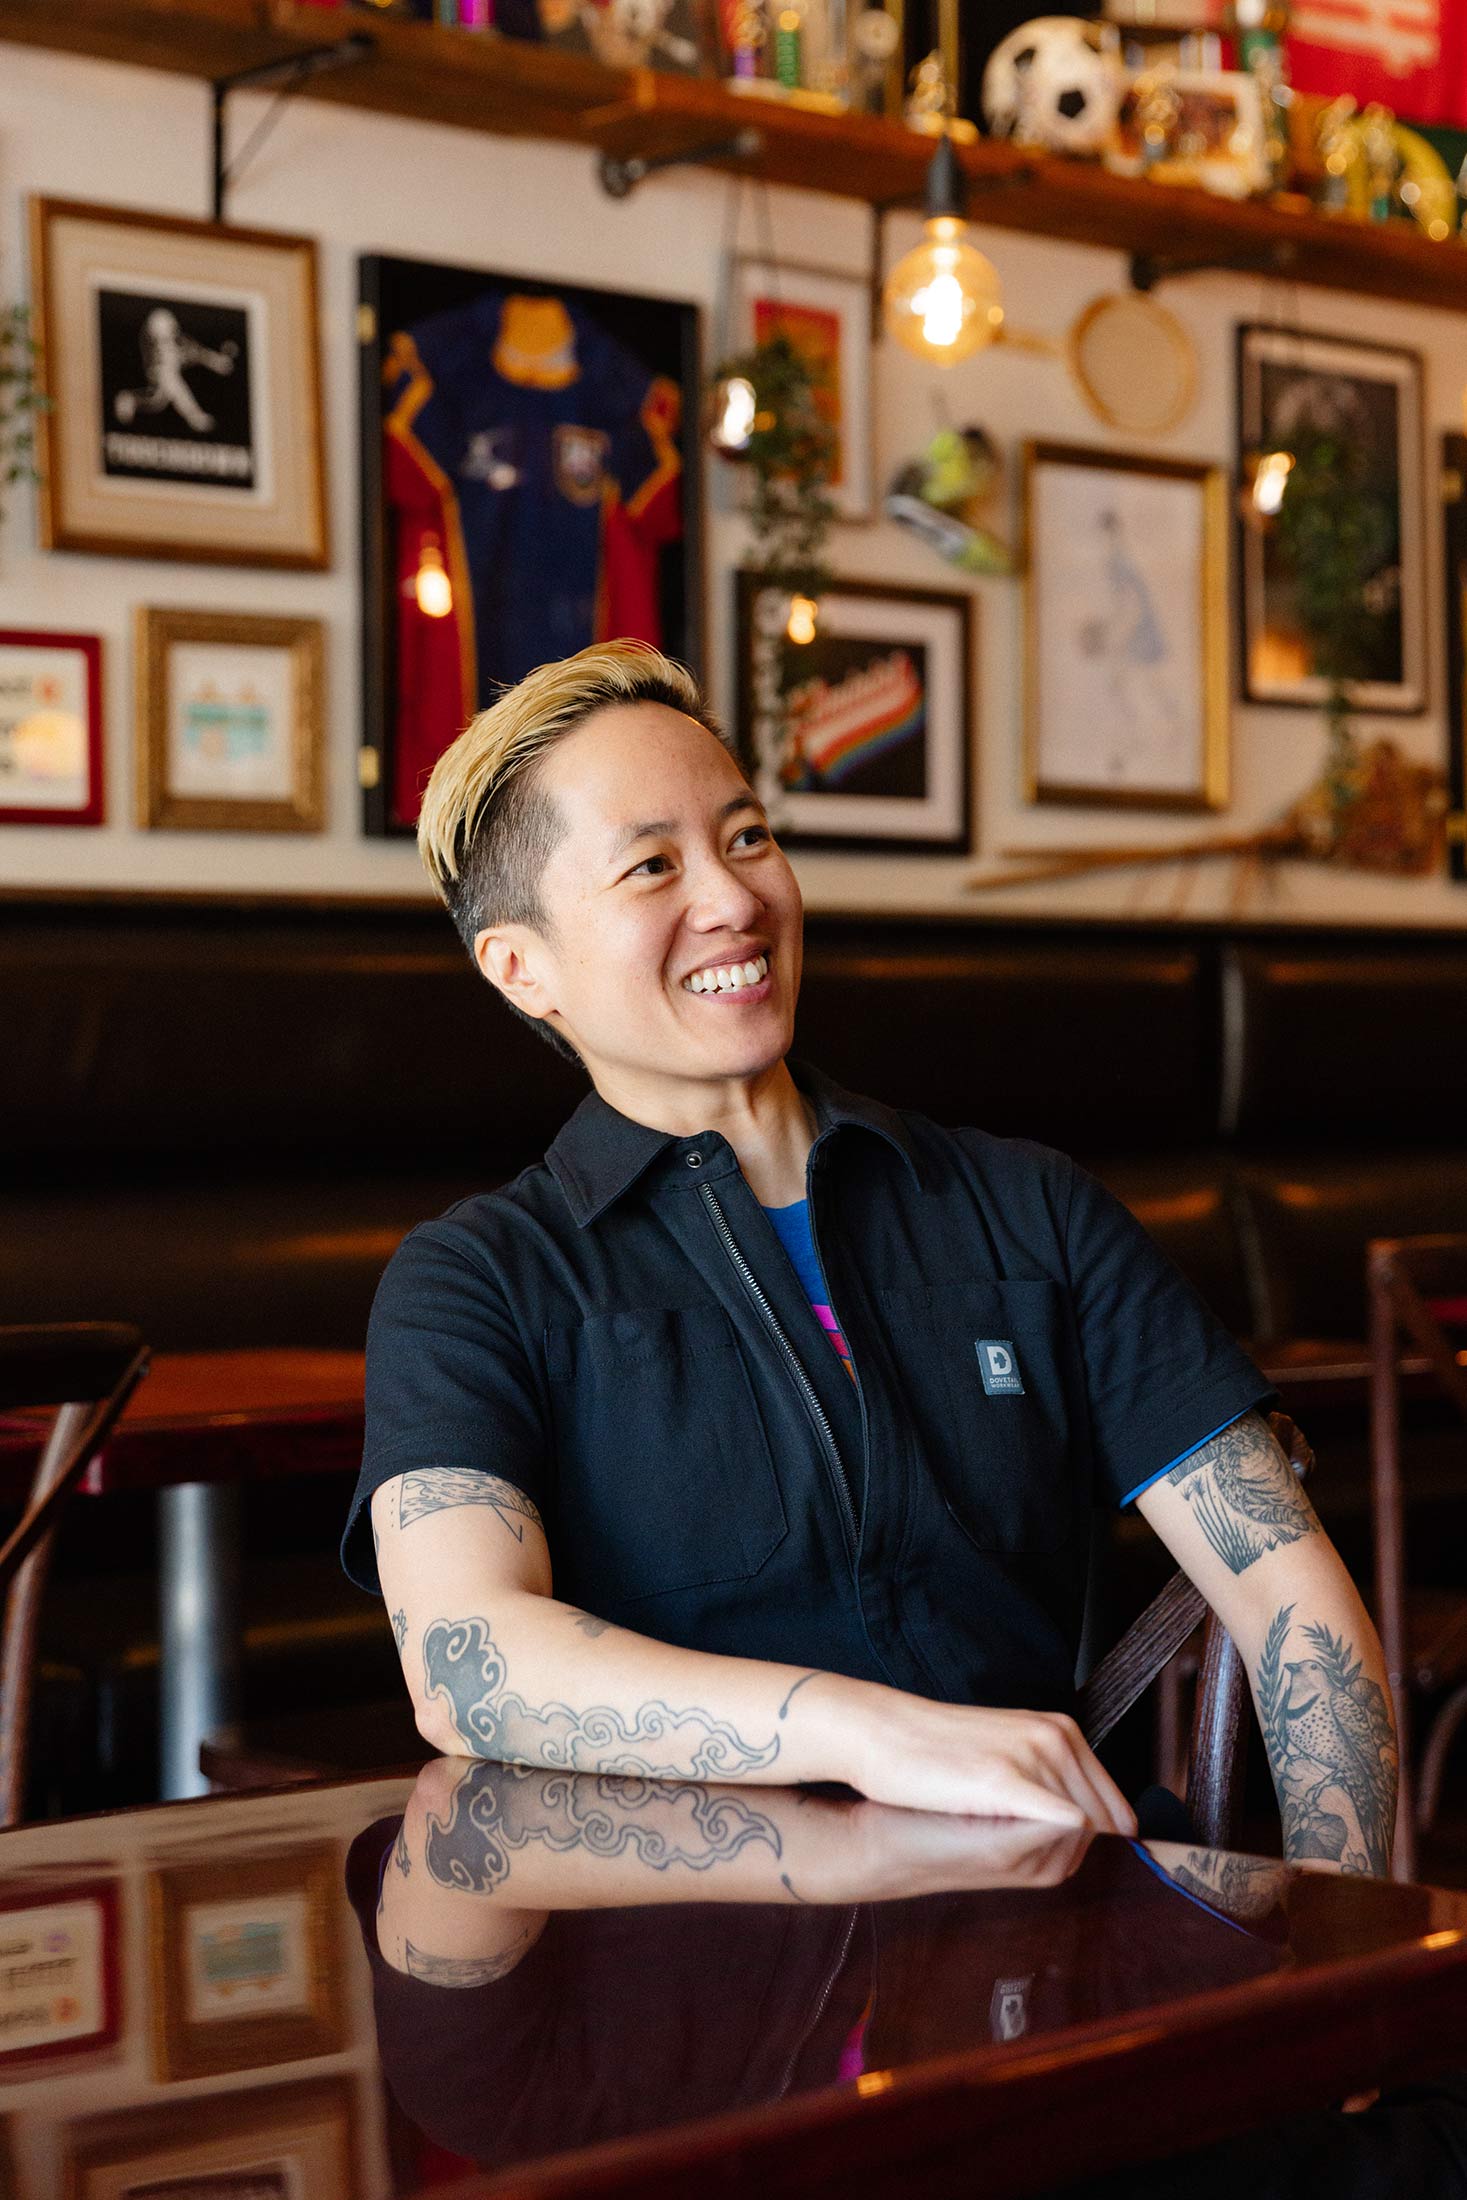 The Sports Bra: A women's sports bar & restaurant by Jenny Nguyen —  Kickstarter